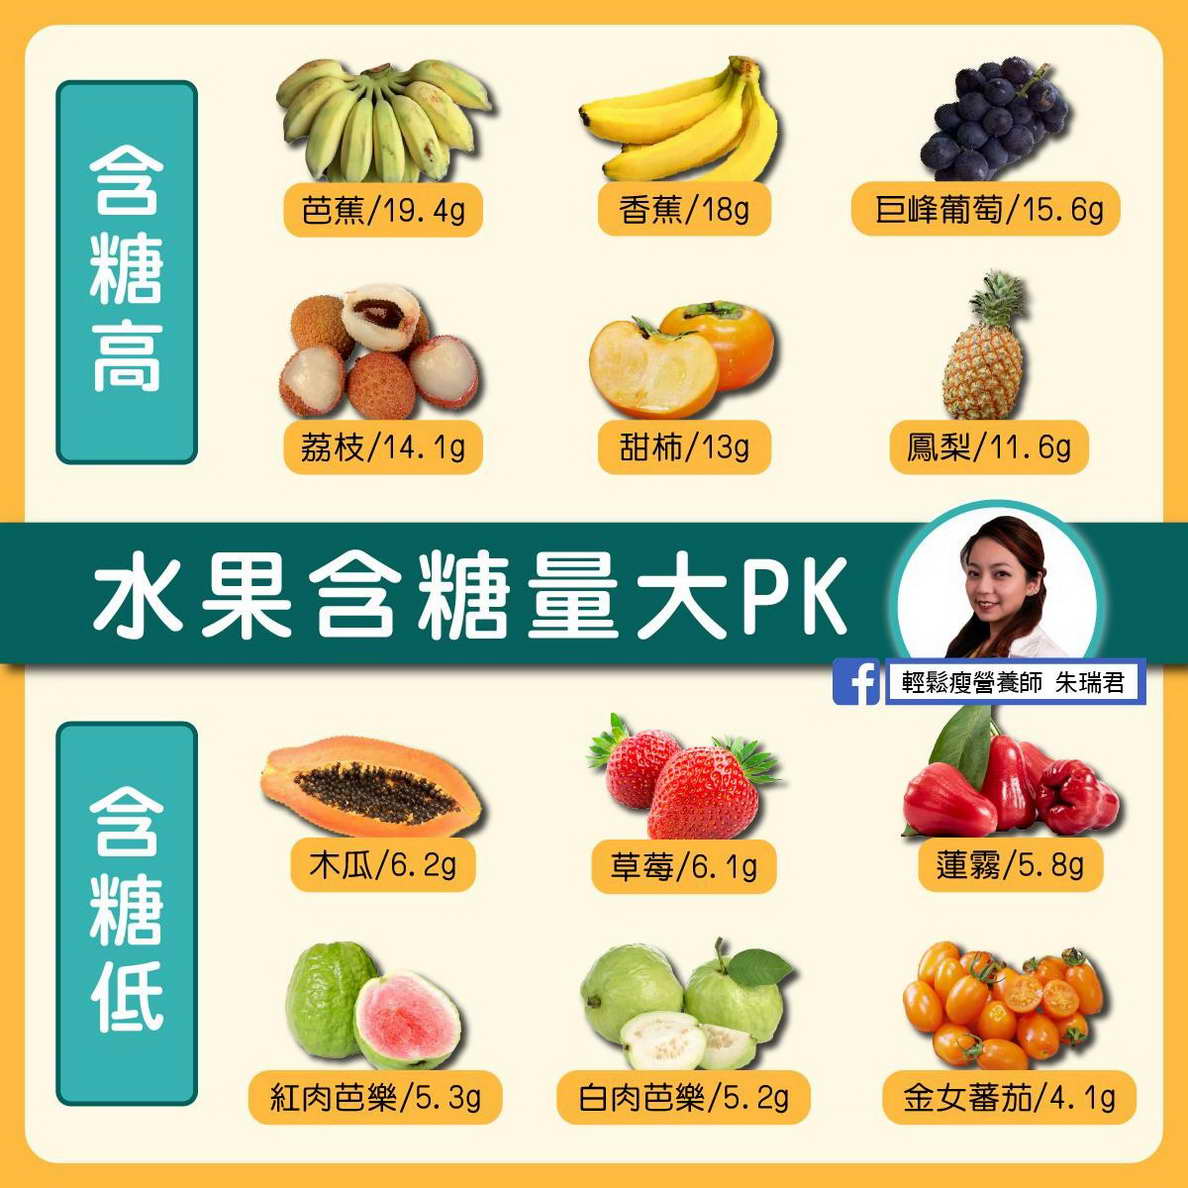 甜到發肥「脂肪肝找上門」！台灣水果含糖量排行TOP6曝光